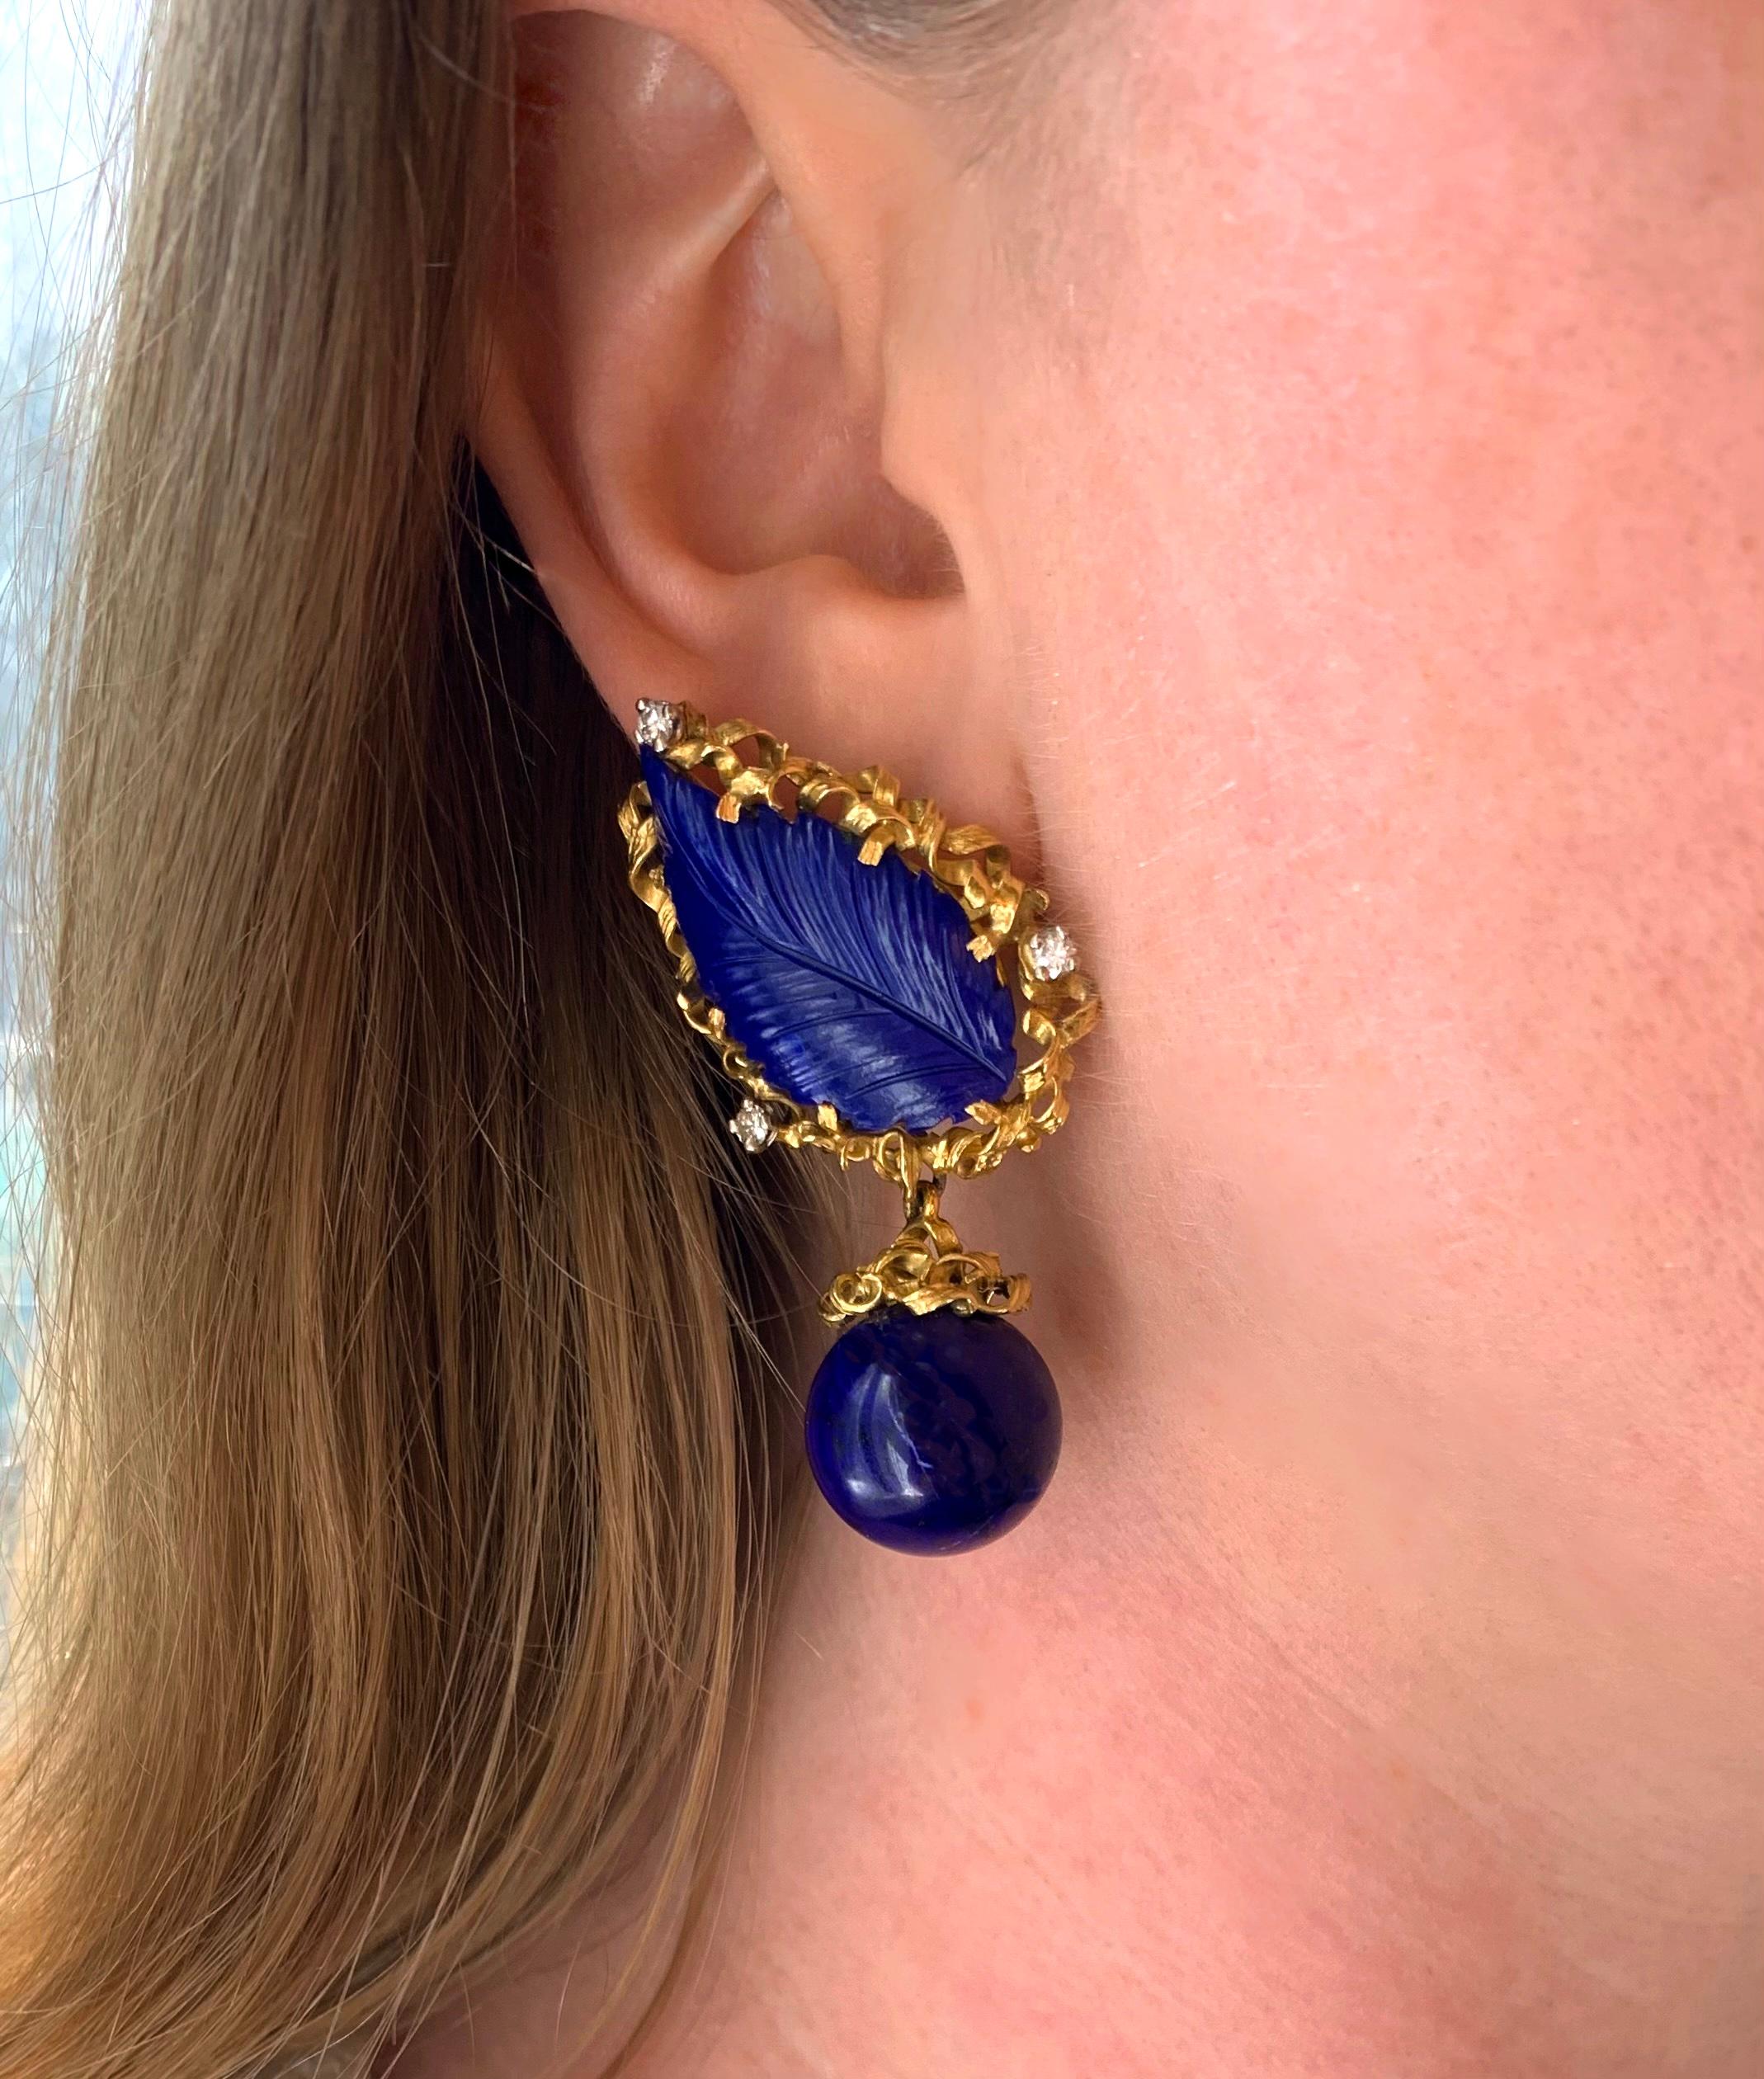 Ein sehr schönes Paar Ohrringe aus Lapislazuli, Diamanten und 18-karätigem Gelbgold, ca. 1975, die tagsüber getragen oder für eine Nacht umgewandelt werden können.

Dieses Paar atemberaubender Ohrhänger besteht aus einem wunderschön geschnitzten,